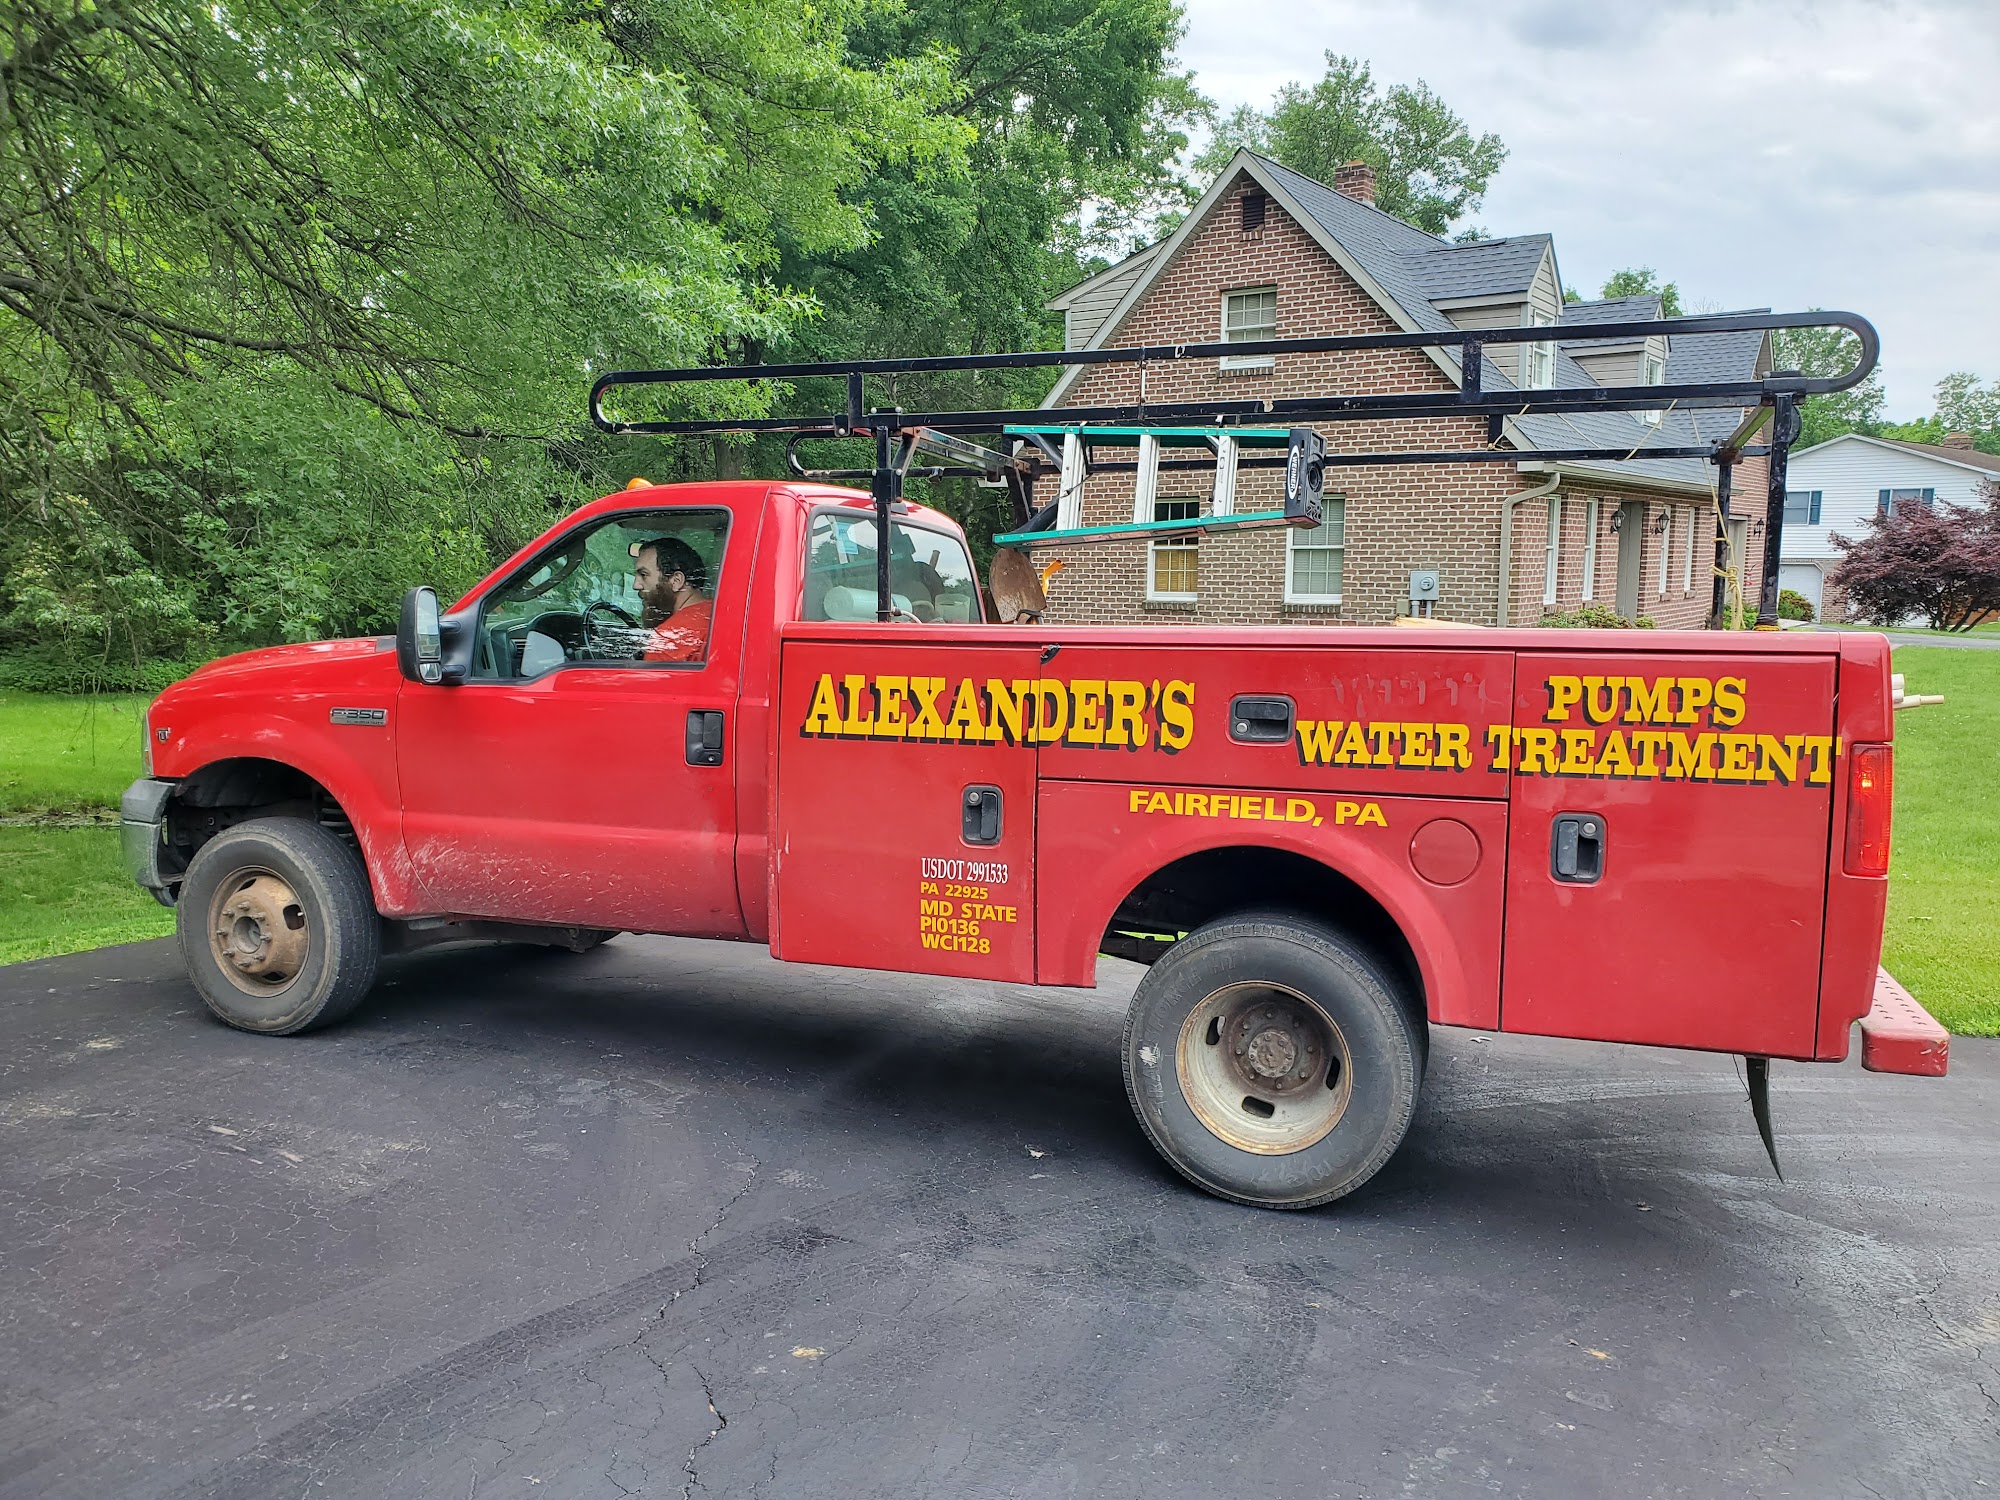 Alexander's Plumbing, Pumps & Water Treatments